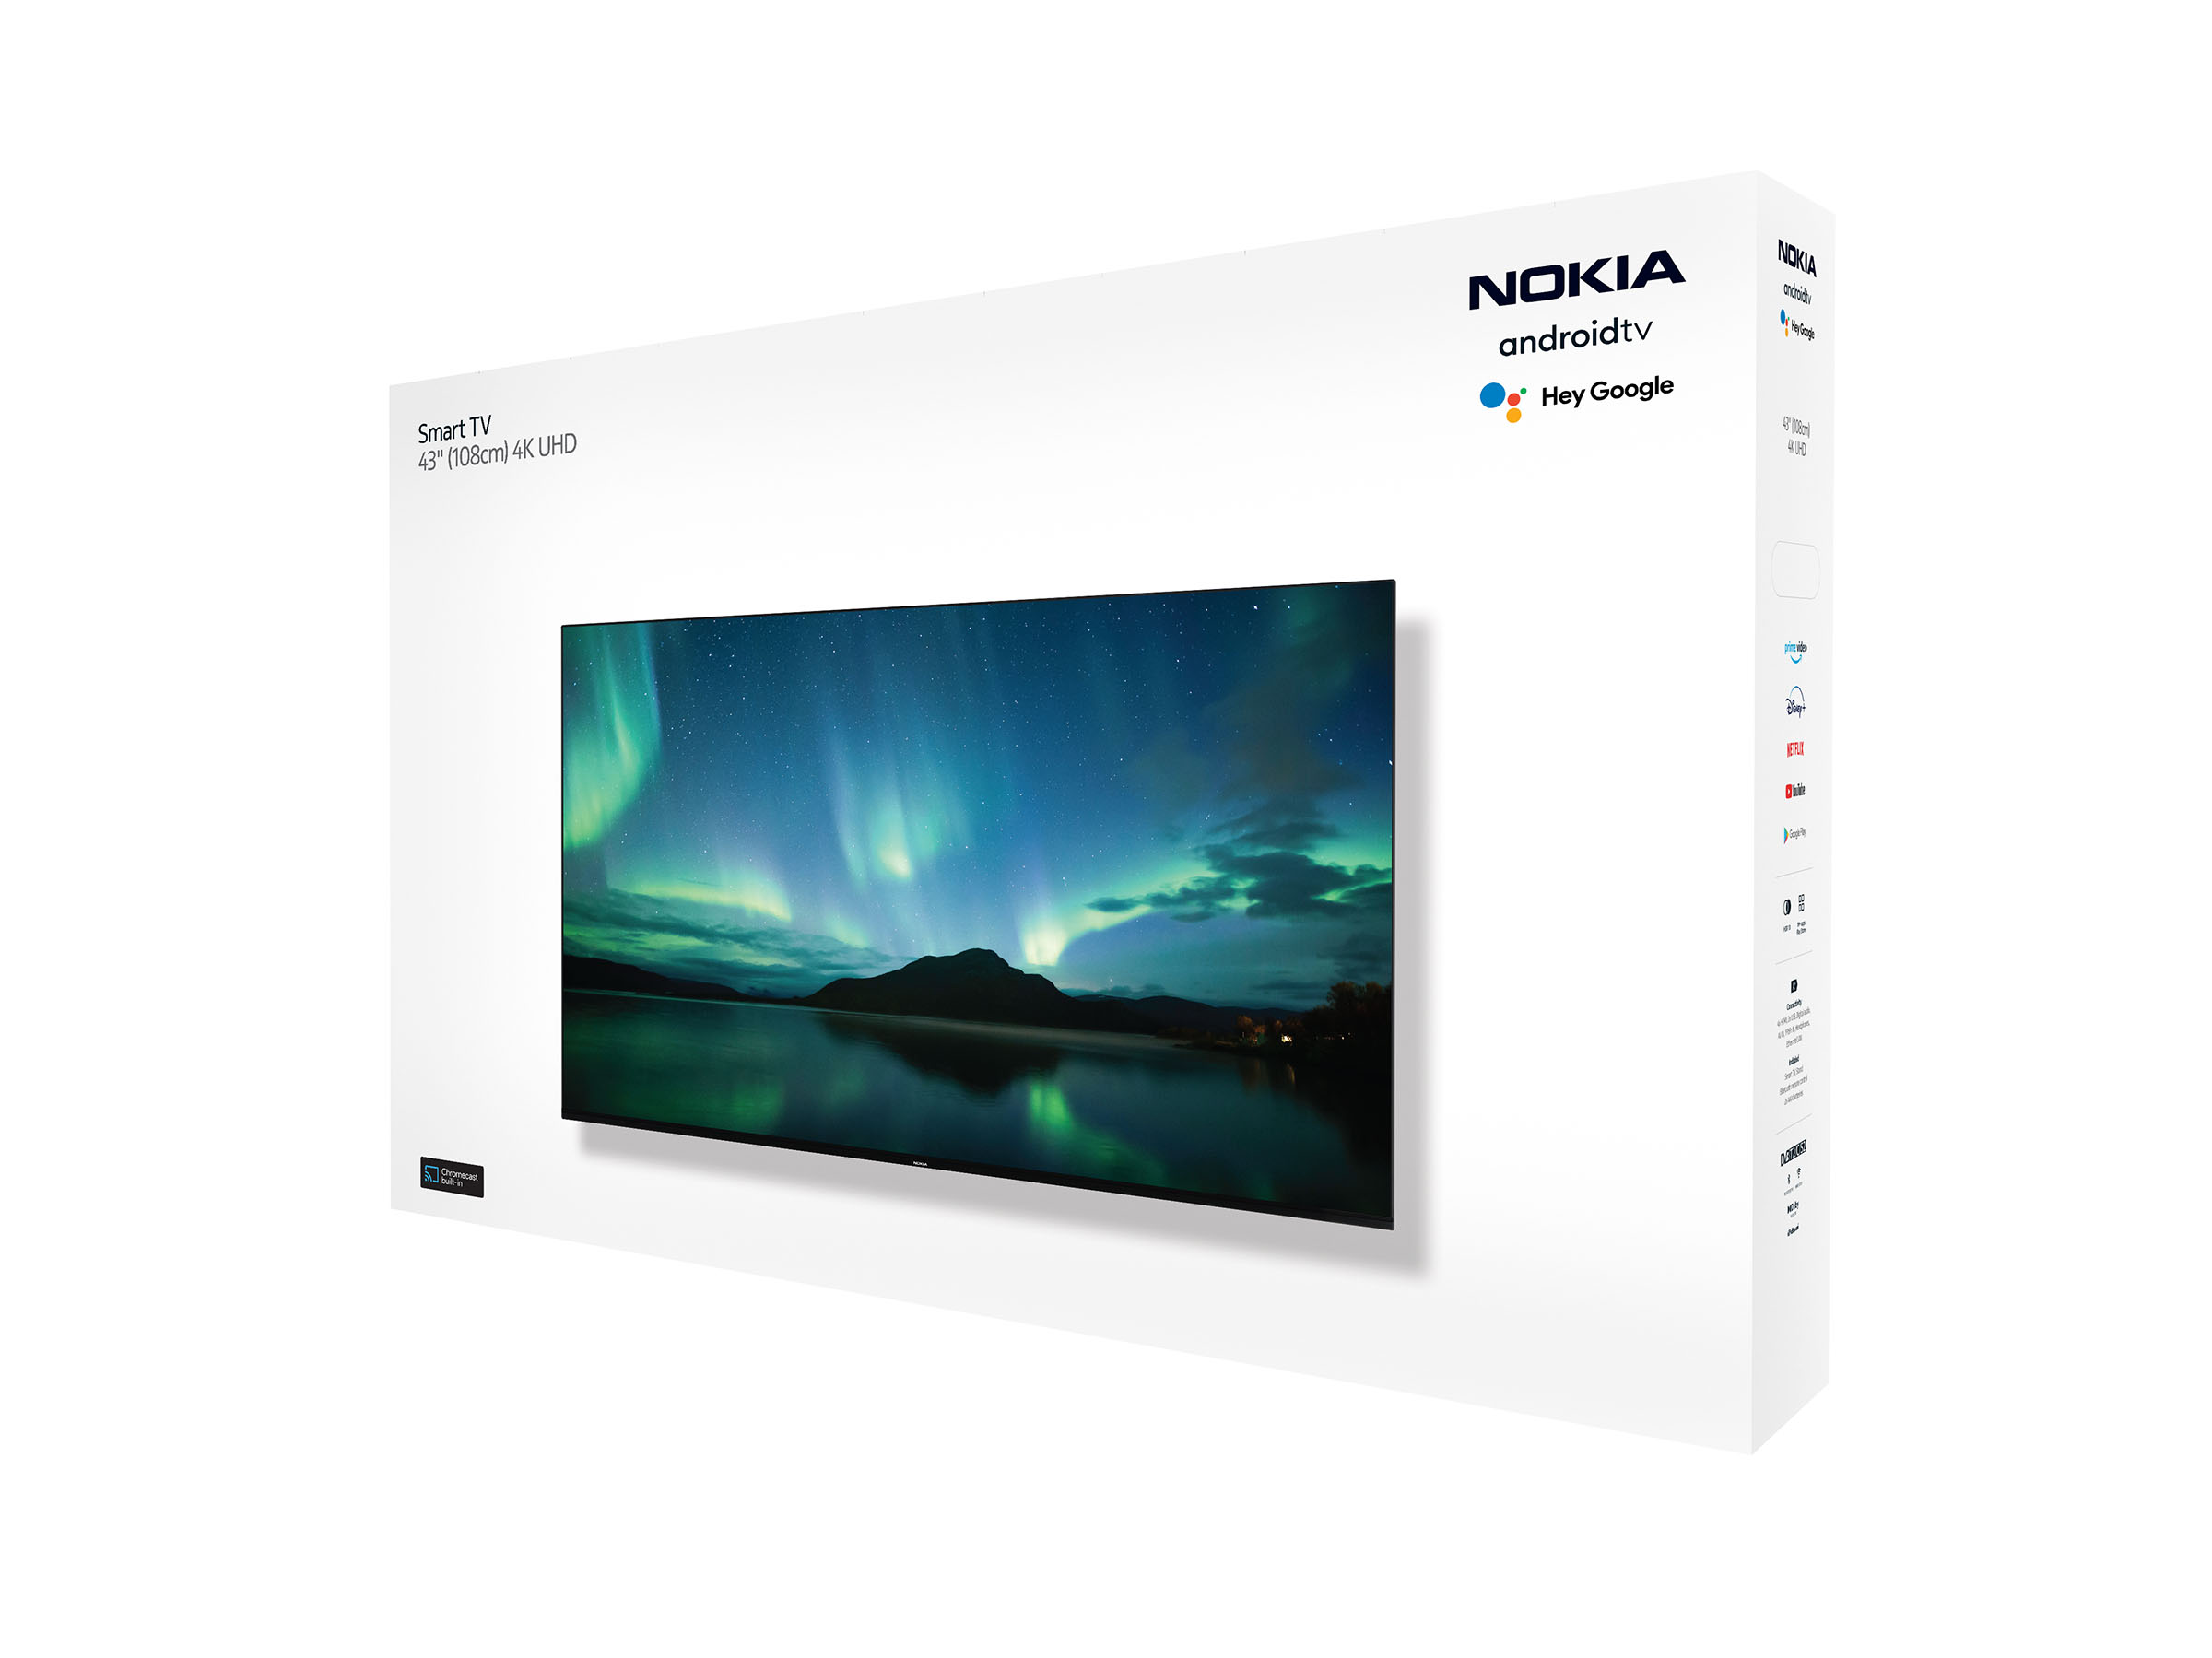 Nokia Smart TV 4300A